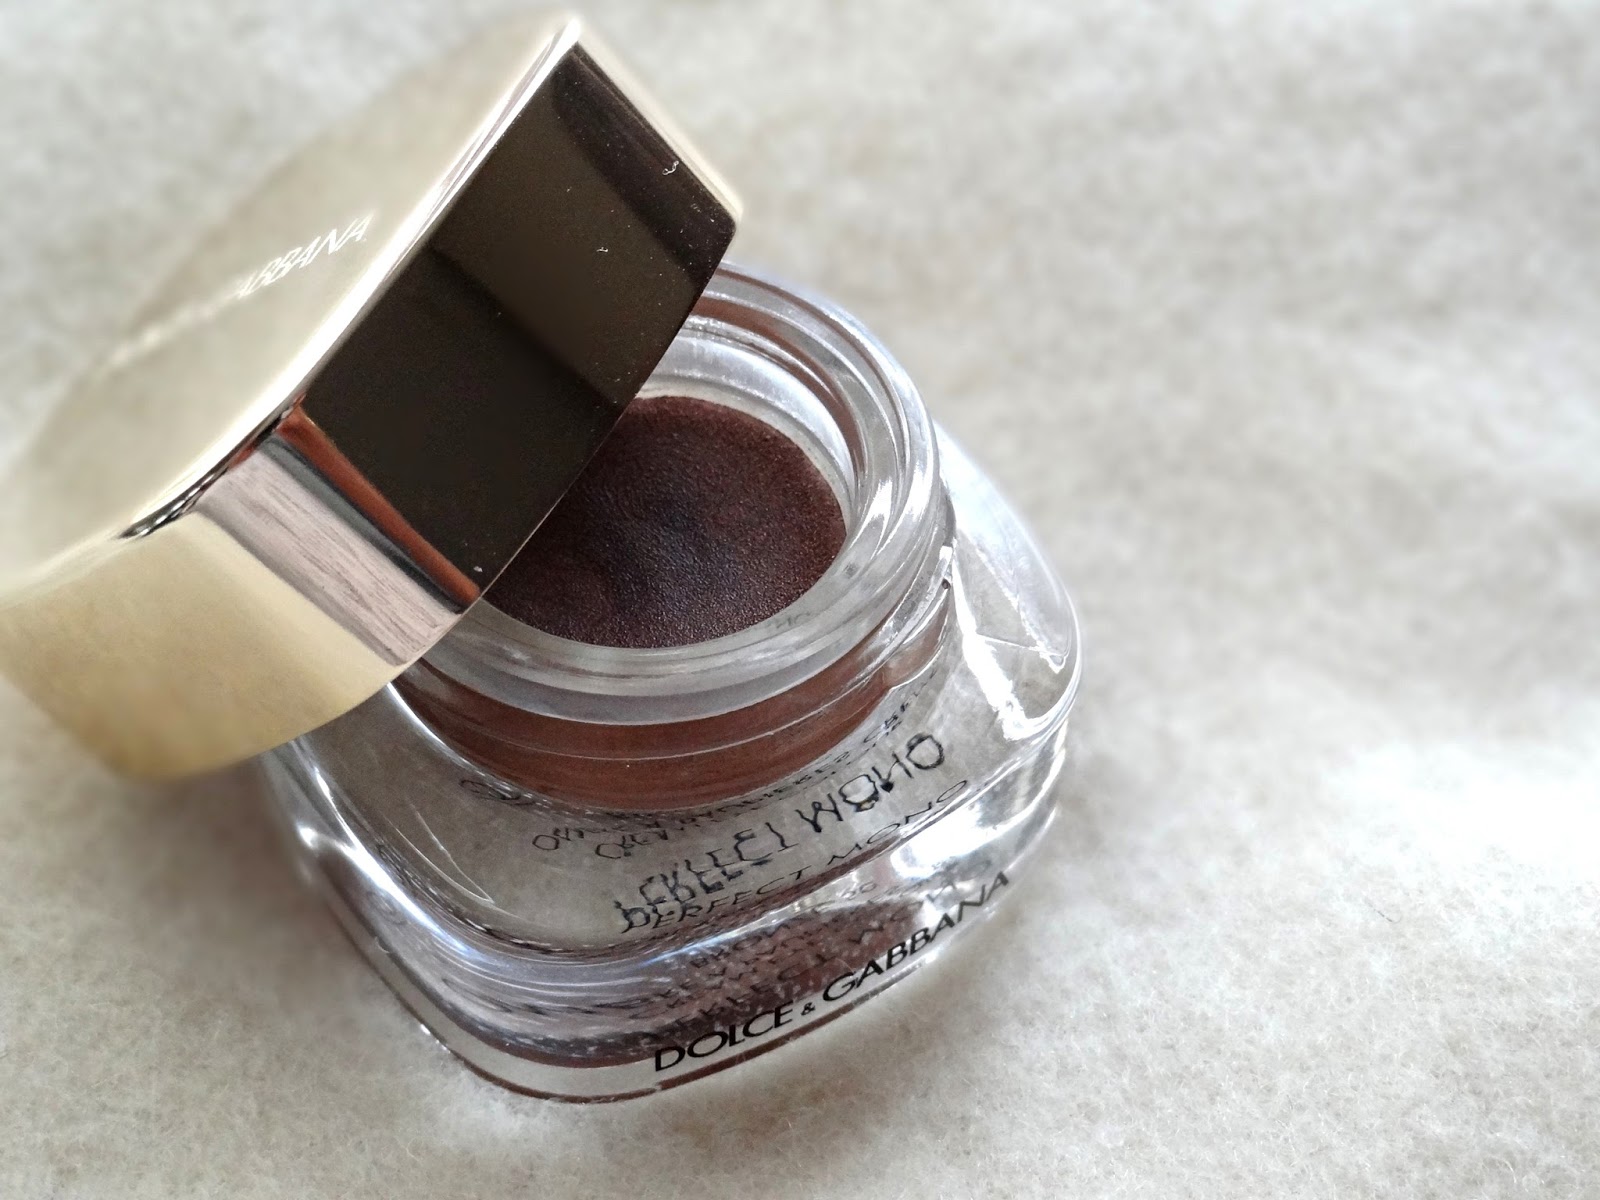 Dolce & Gabbana Perfect Mono Cream Eye Colour in Bronze